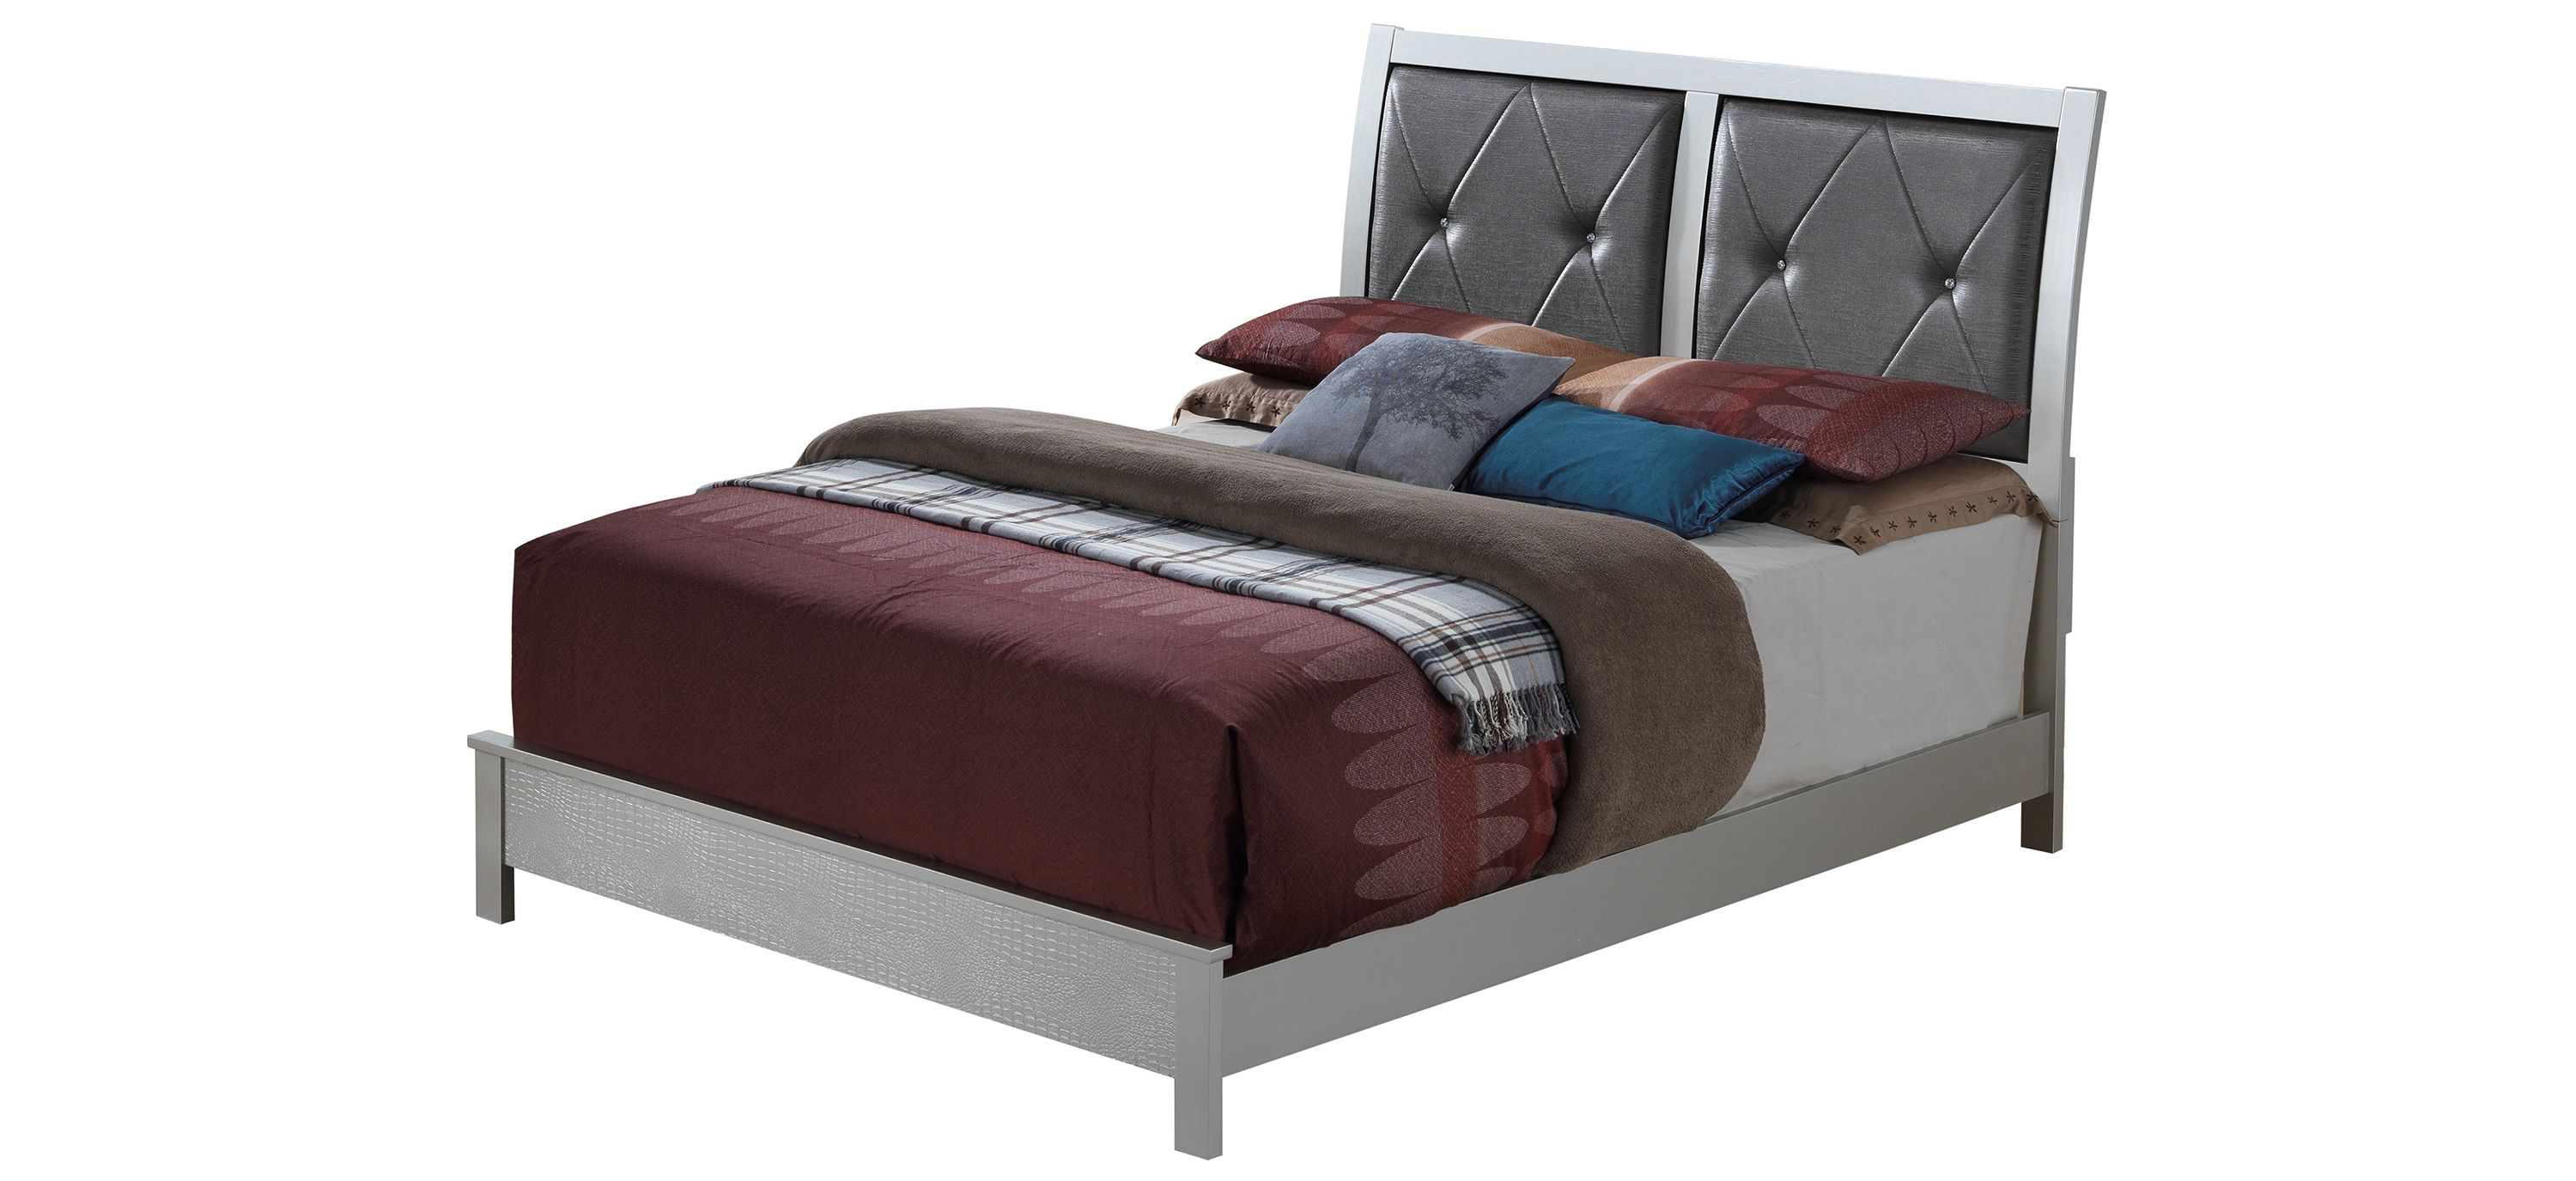 Glades Upholstered Bed